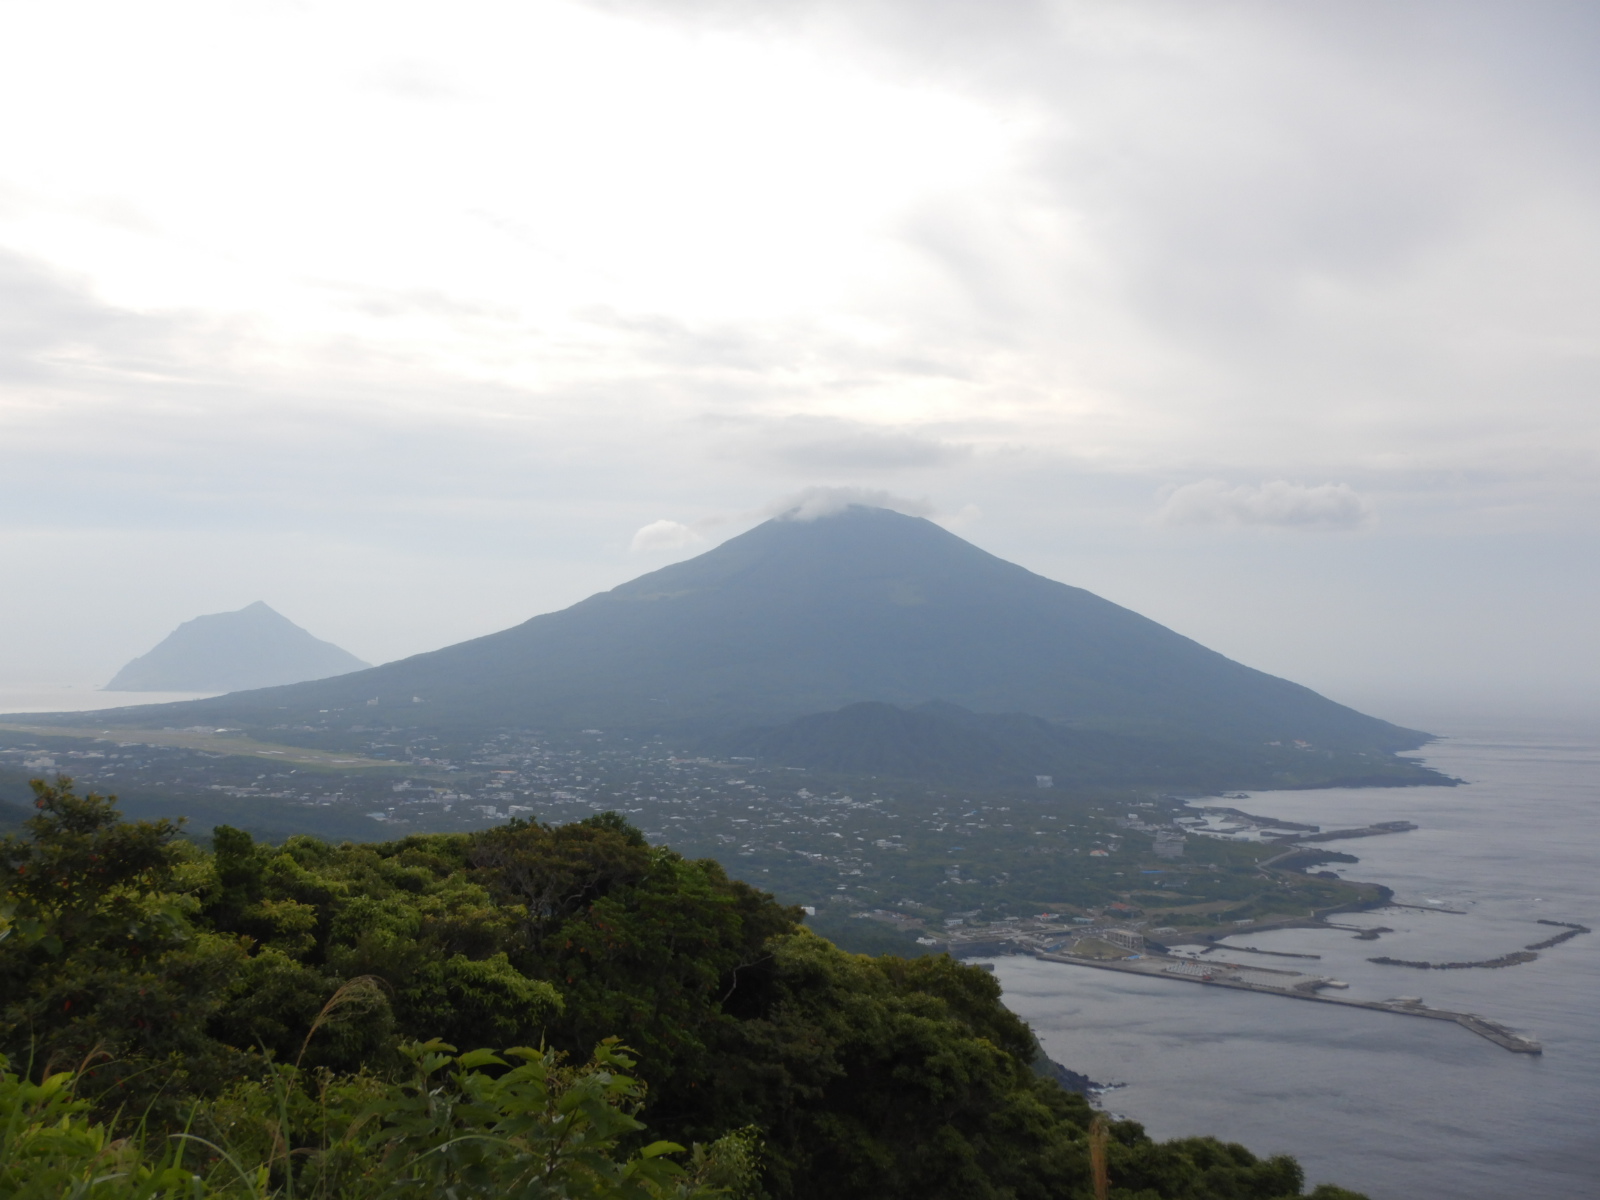 伊豆諸島 八丈島 八丈富士と三原山ハイキング 関西を出発拠点とした少人数山旅企画 山旅人 やまたびと